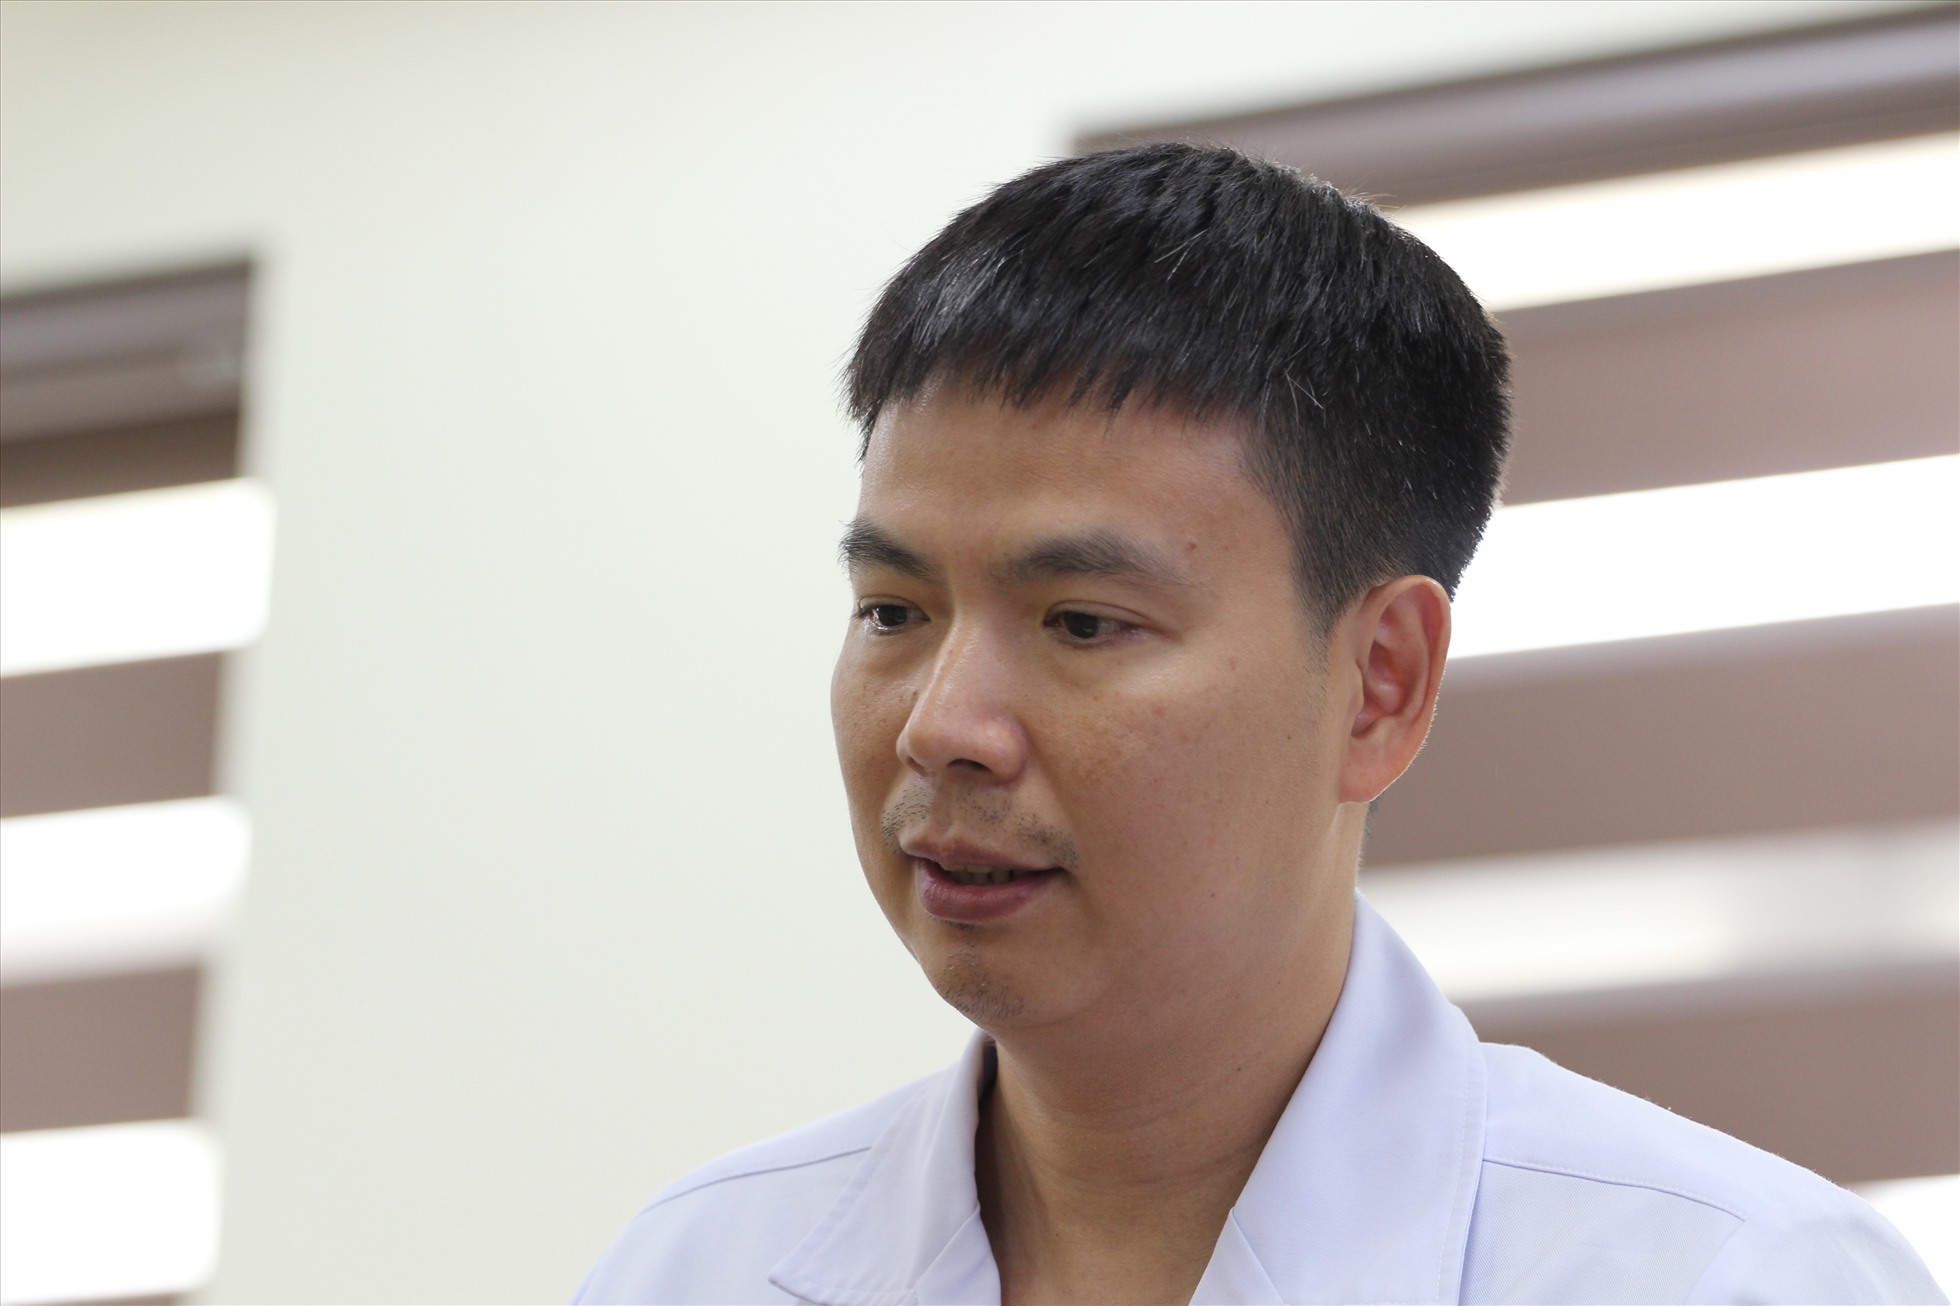 PGS Nghĩa- Giám đốc Trung tâm Ghép tạng. Ảnh: Thùy Linh